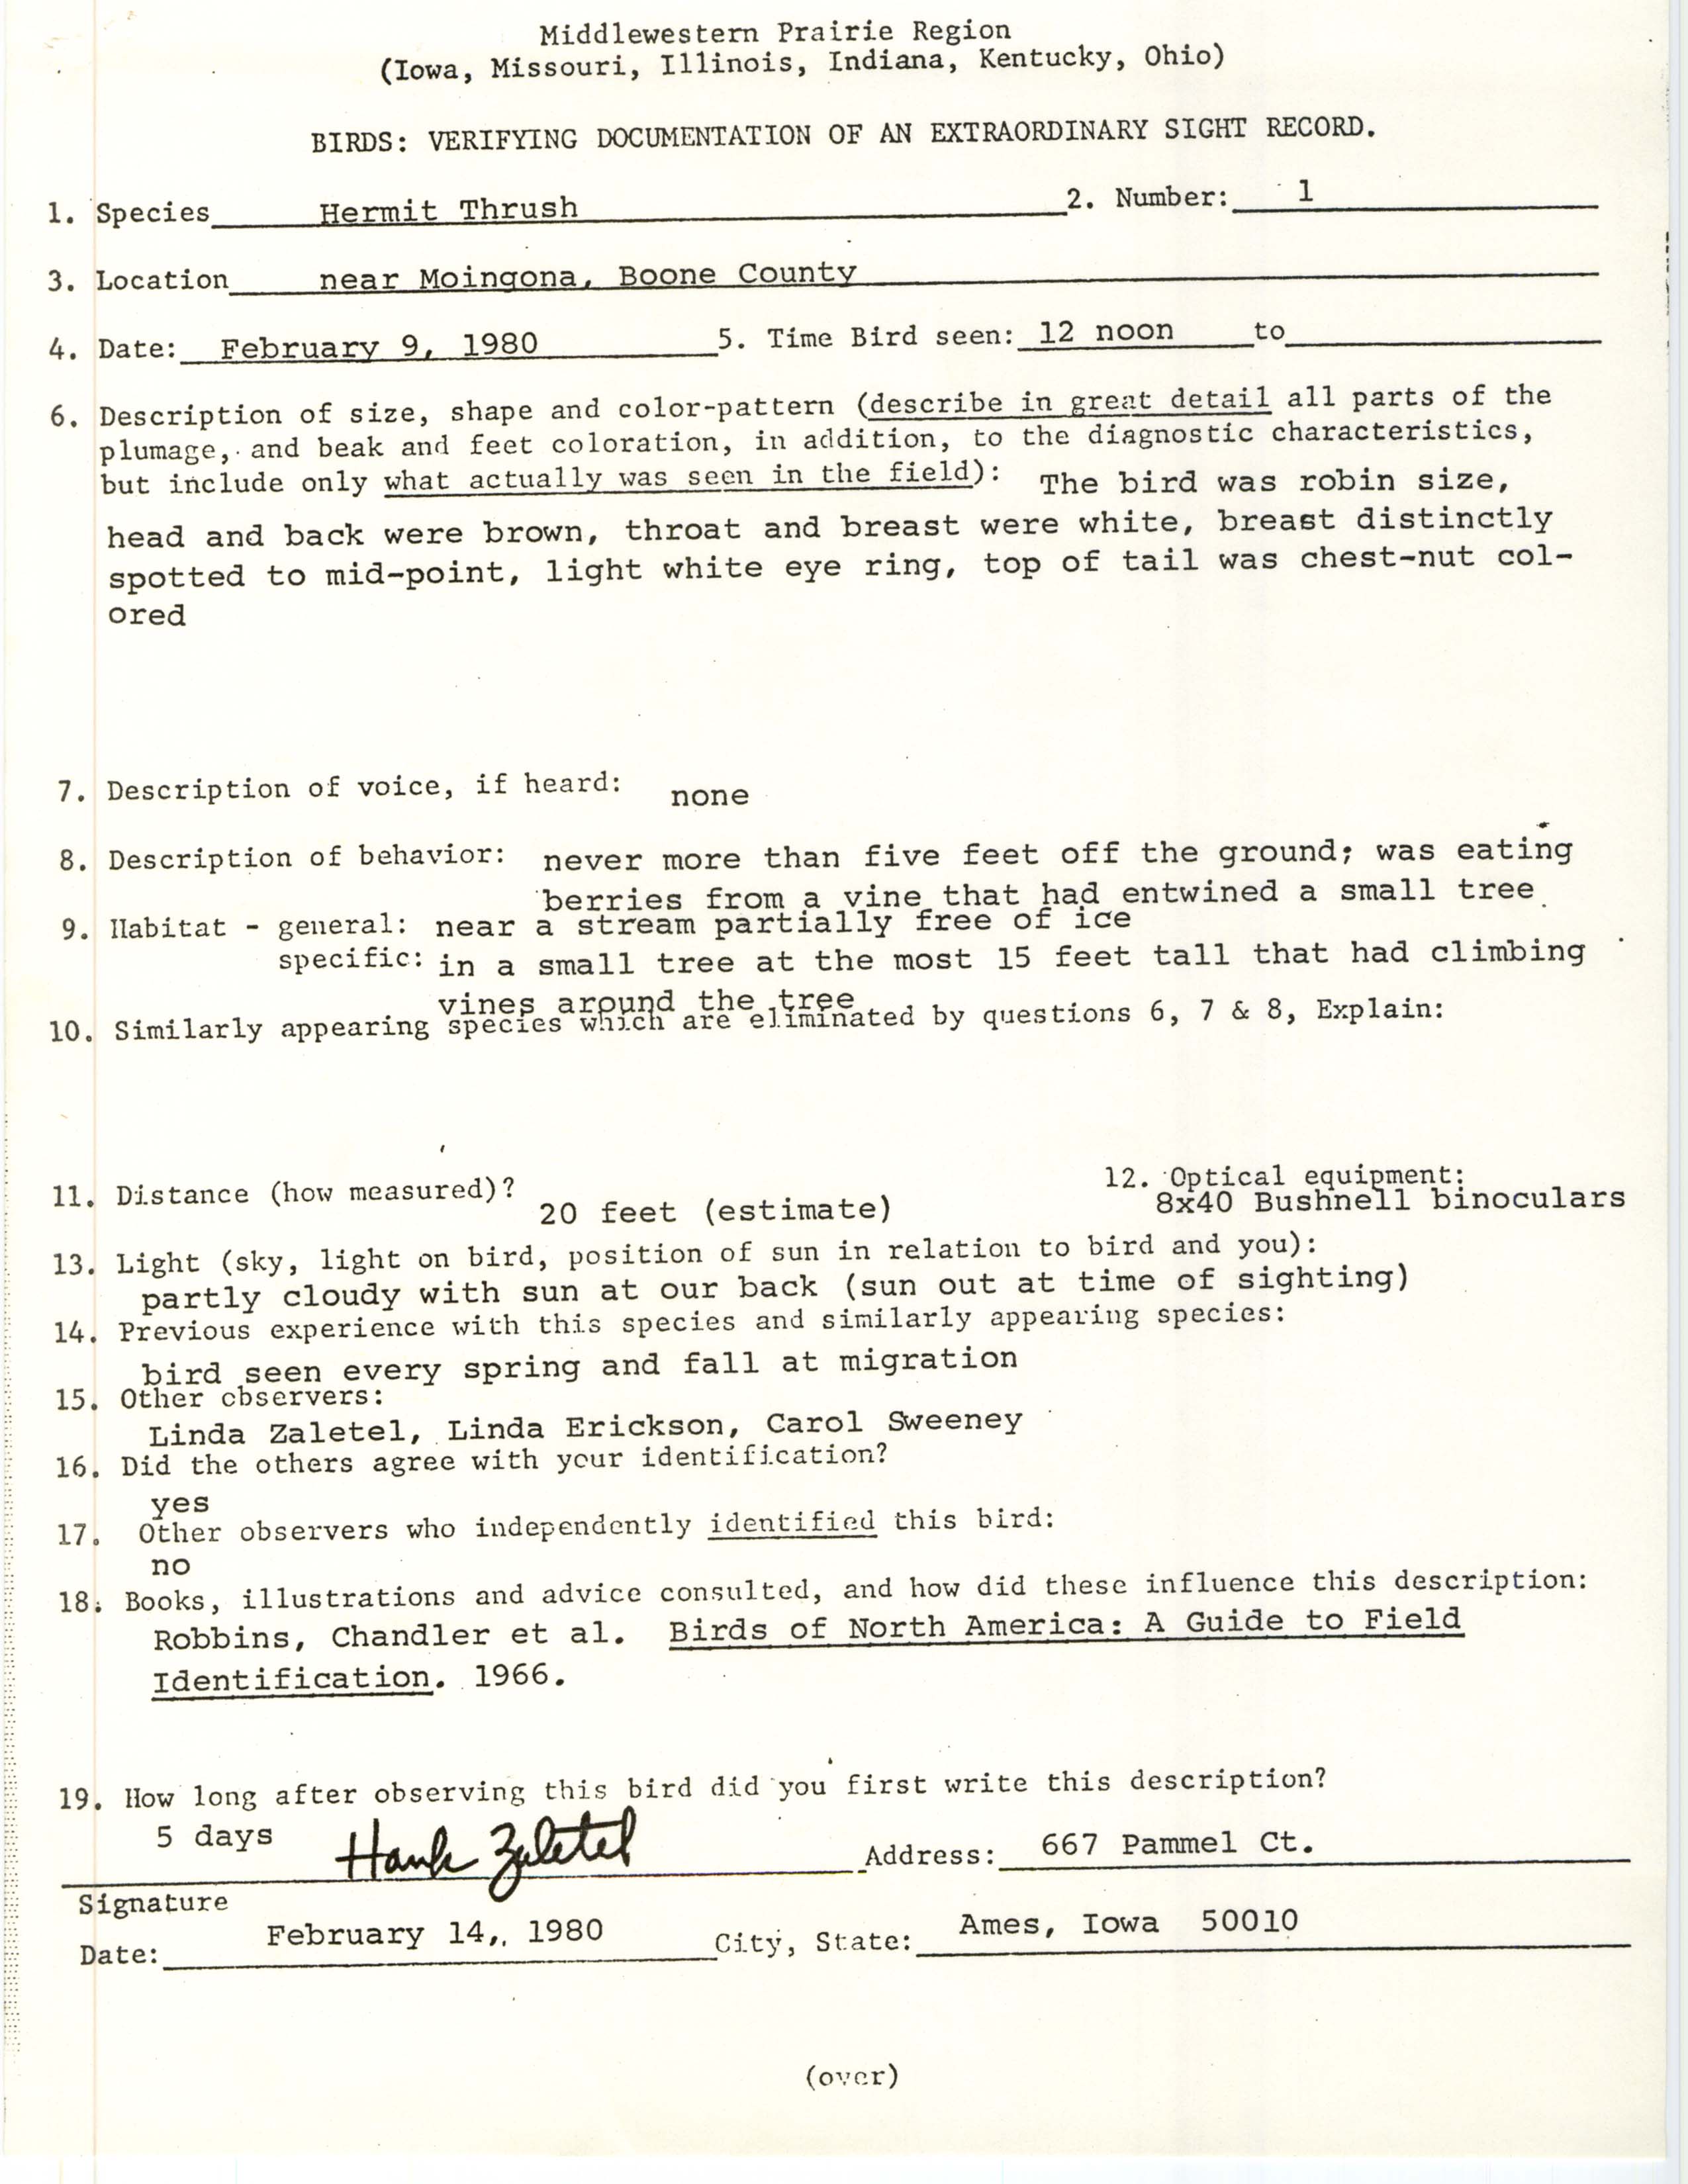 Rare bird documentation form for Hermit Thrush near Moingona, 1980